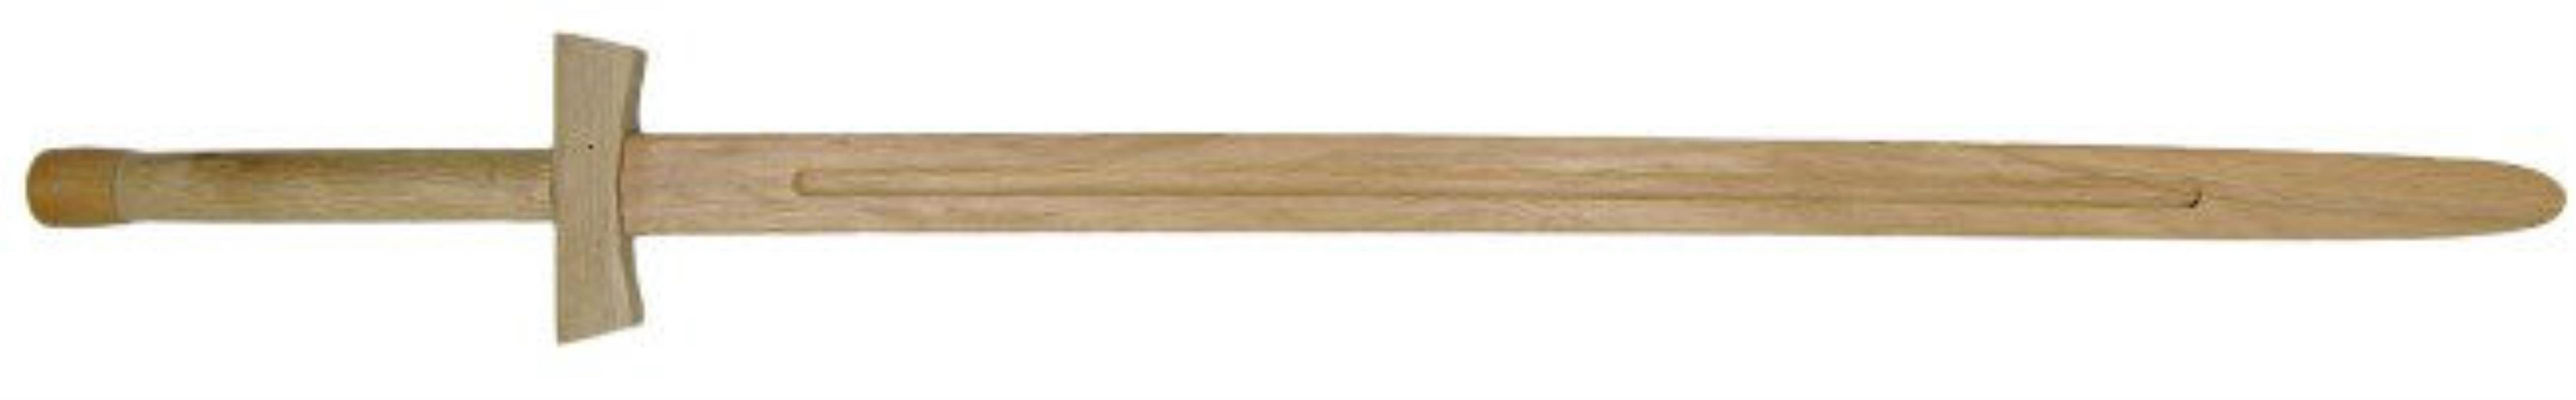 Wooden Long Sword